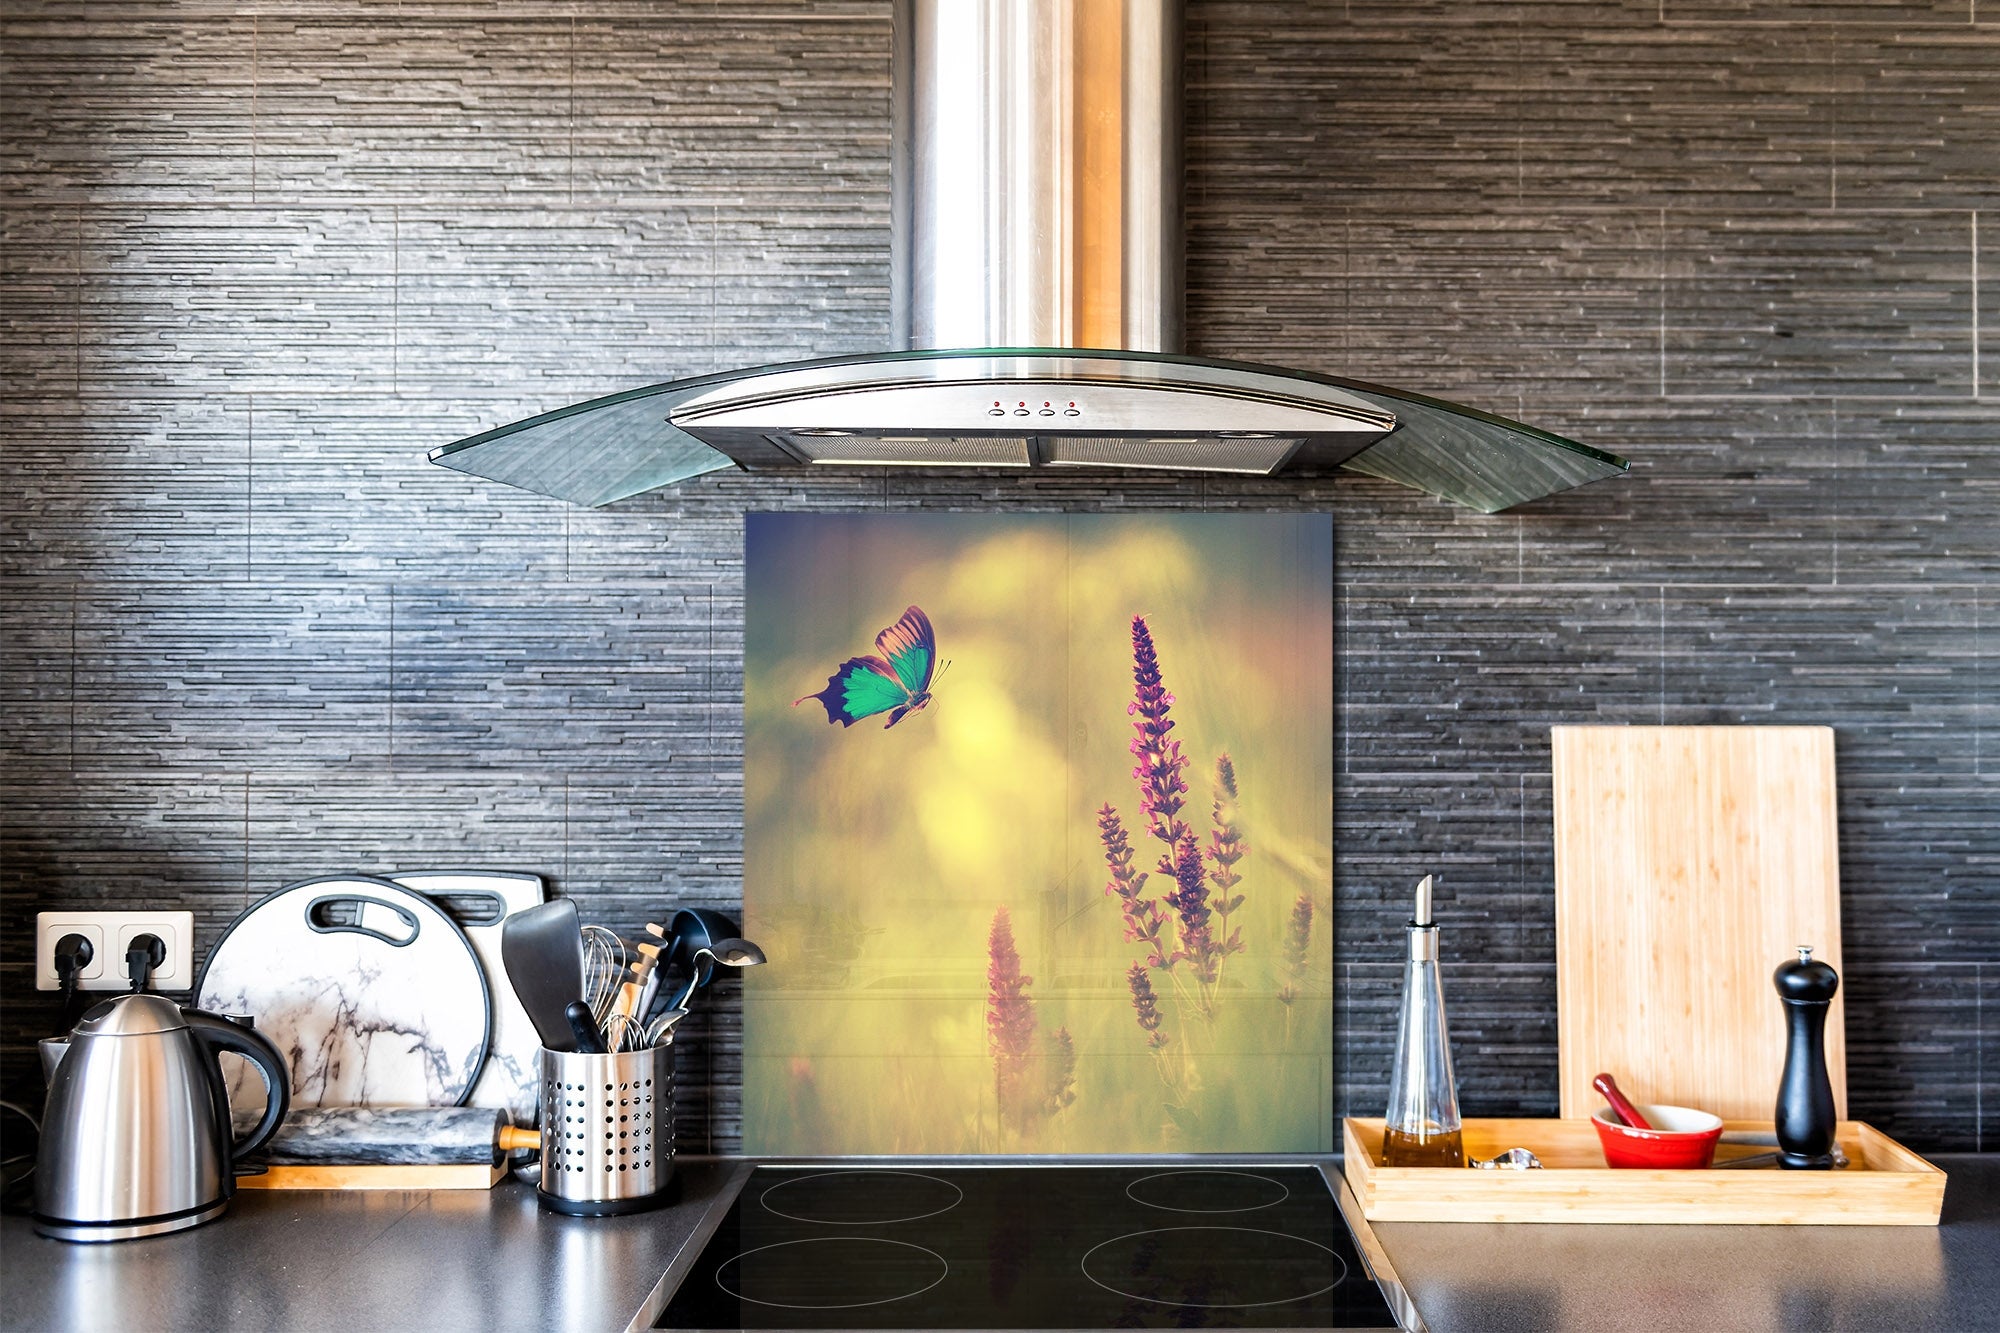 Protector antisalpicaduras baños y cocinas ; Serie hierba verde cereal –  Concept Crystal